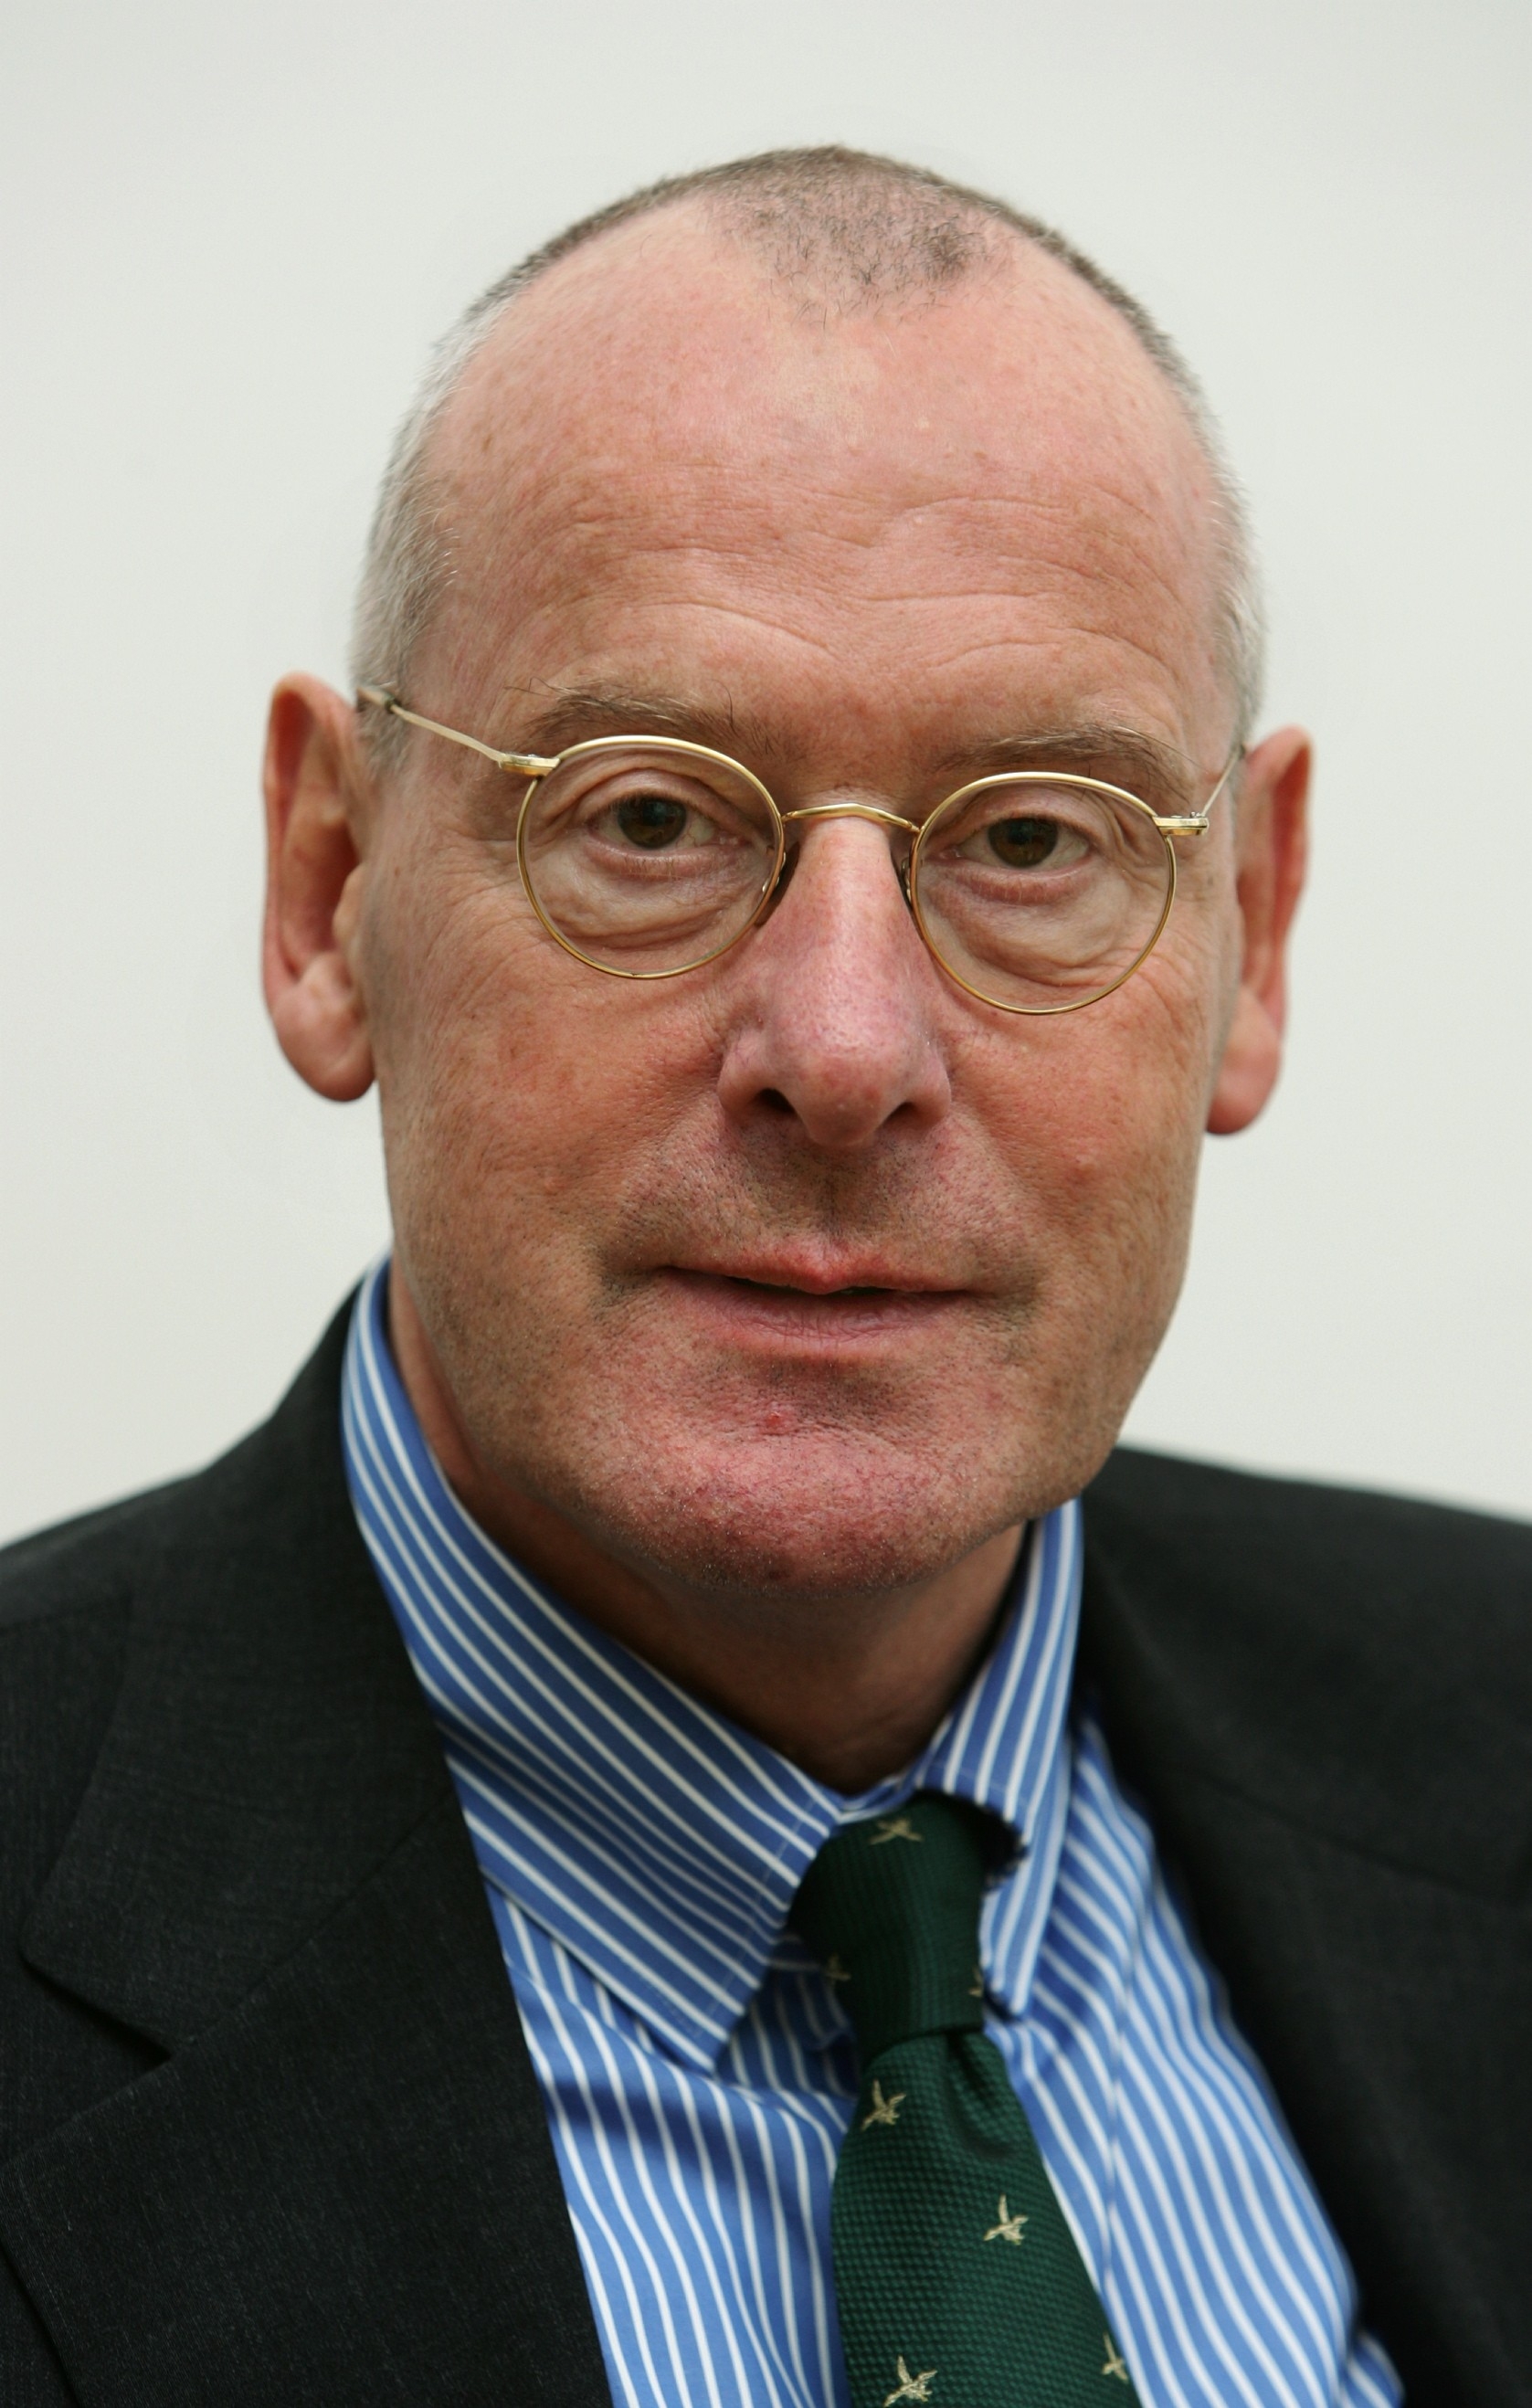 Professor Dr. Volker Gerhardt